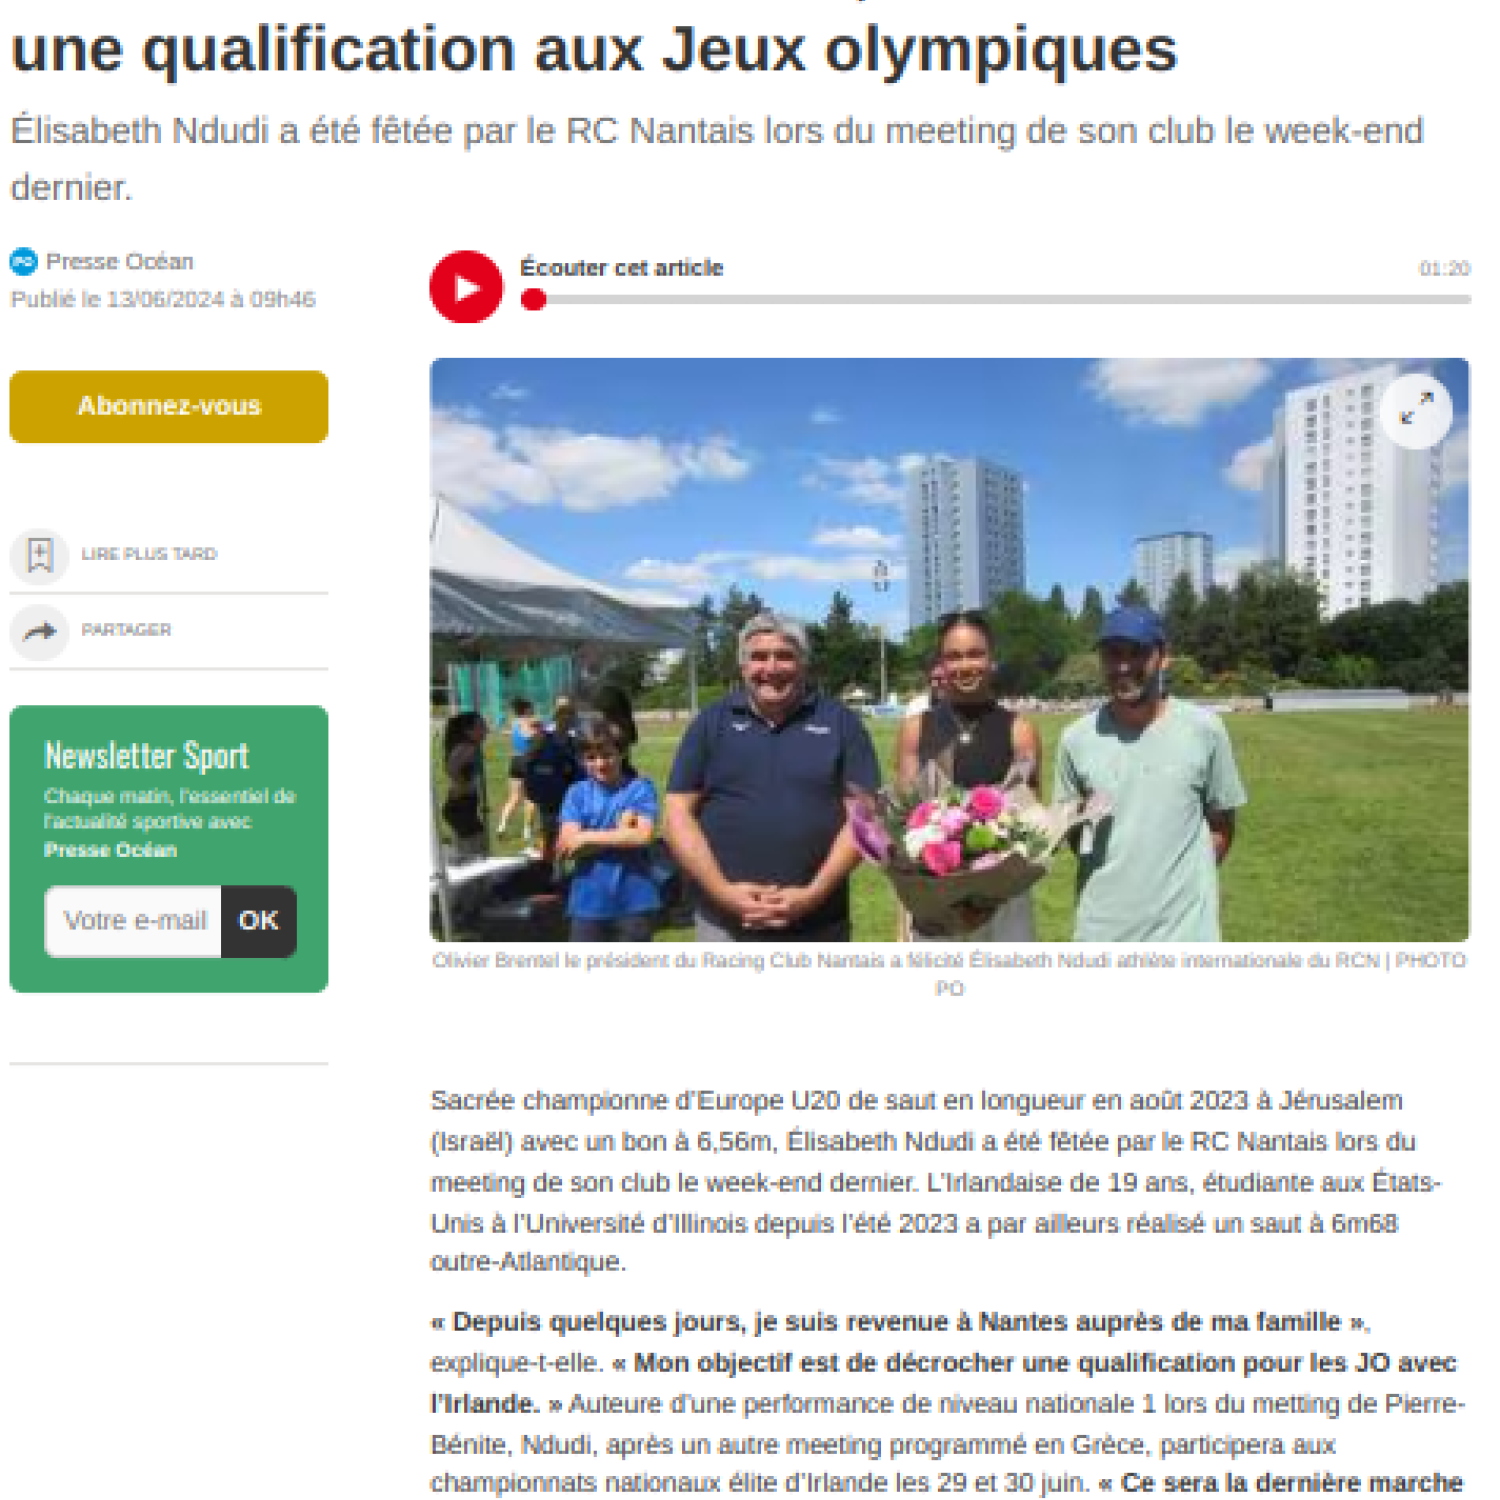 Ouest France 13/06/2024 : Elisabeth Ndudi vise une qualification aux Jeux Olympiques